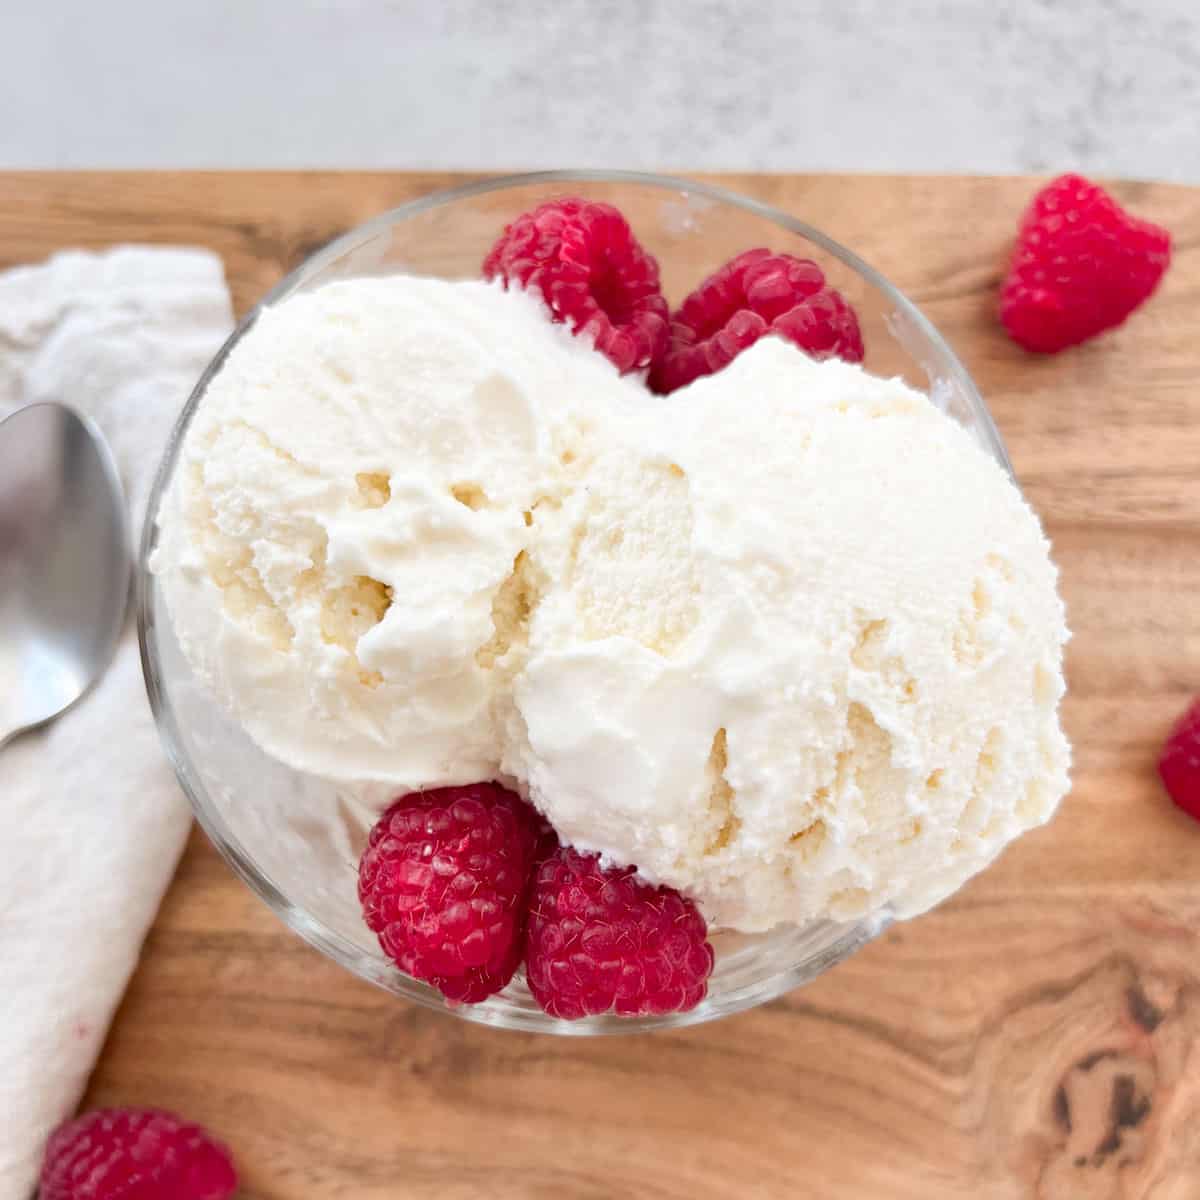 Tovolo Glide-A-Scoop Ice Cream Tub - Strawberry Sorbet